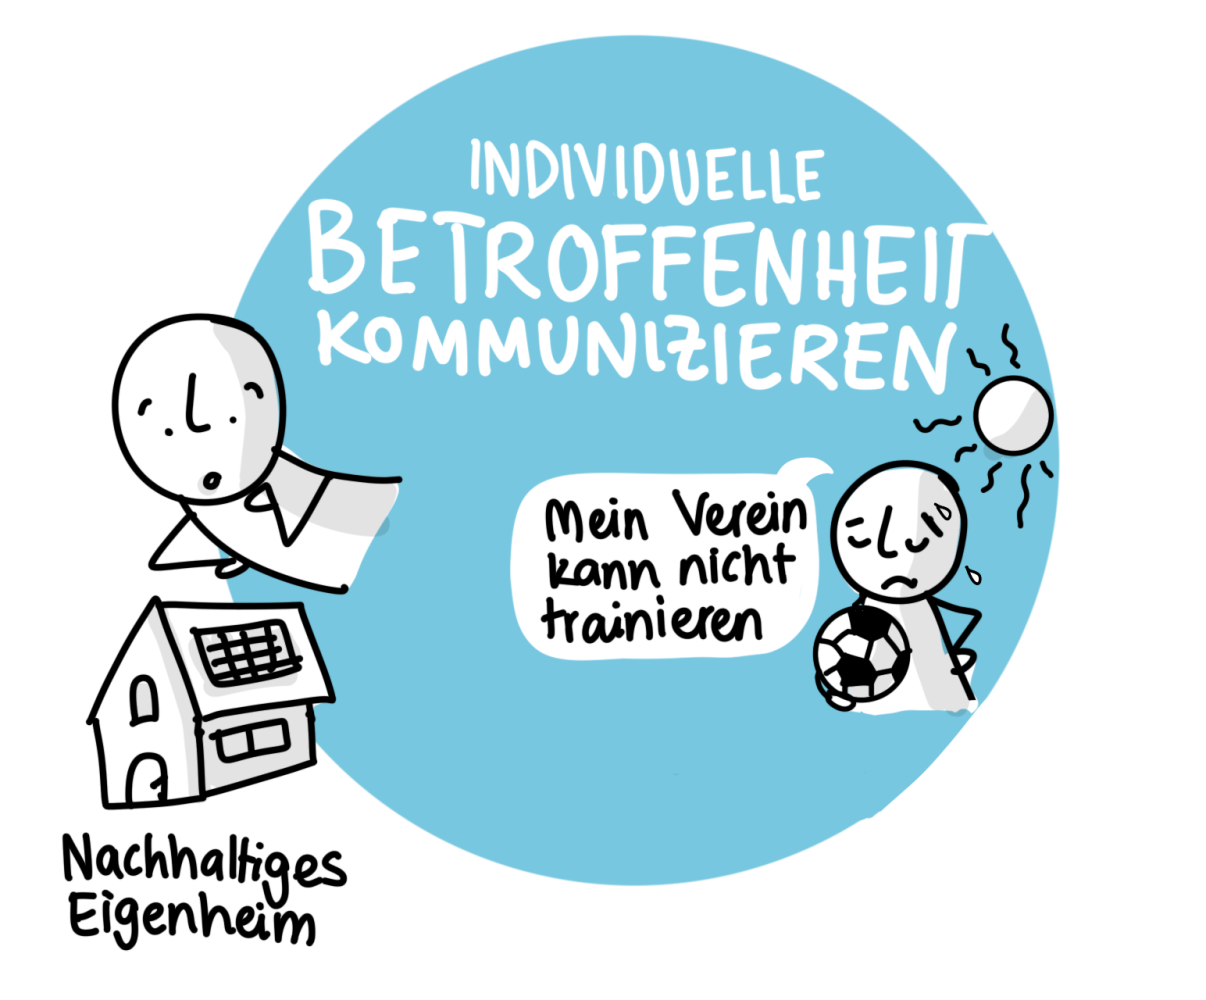 Sketchnote "Individuelle Betroffenheit kommunizieren" mit Beispiel "Mein Verein kann nicht trainieren" und "Nachhaltiges Eigenheim"